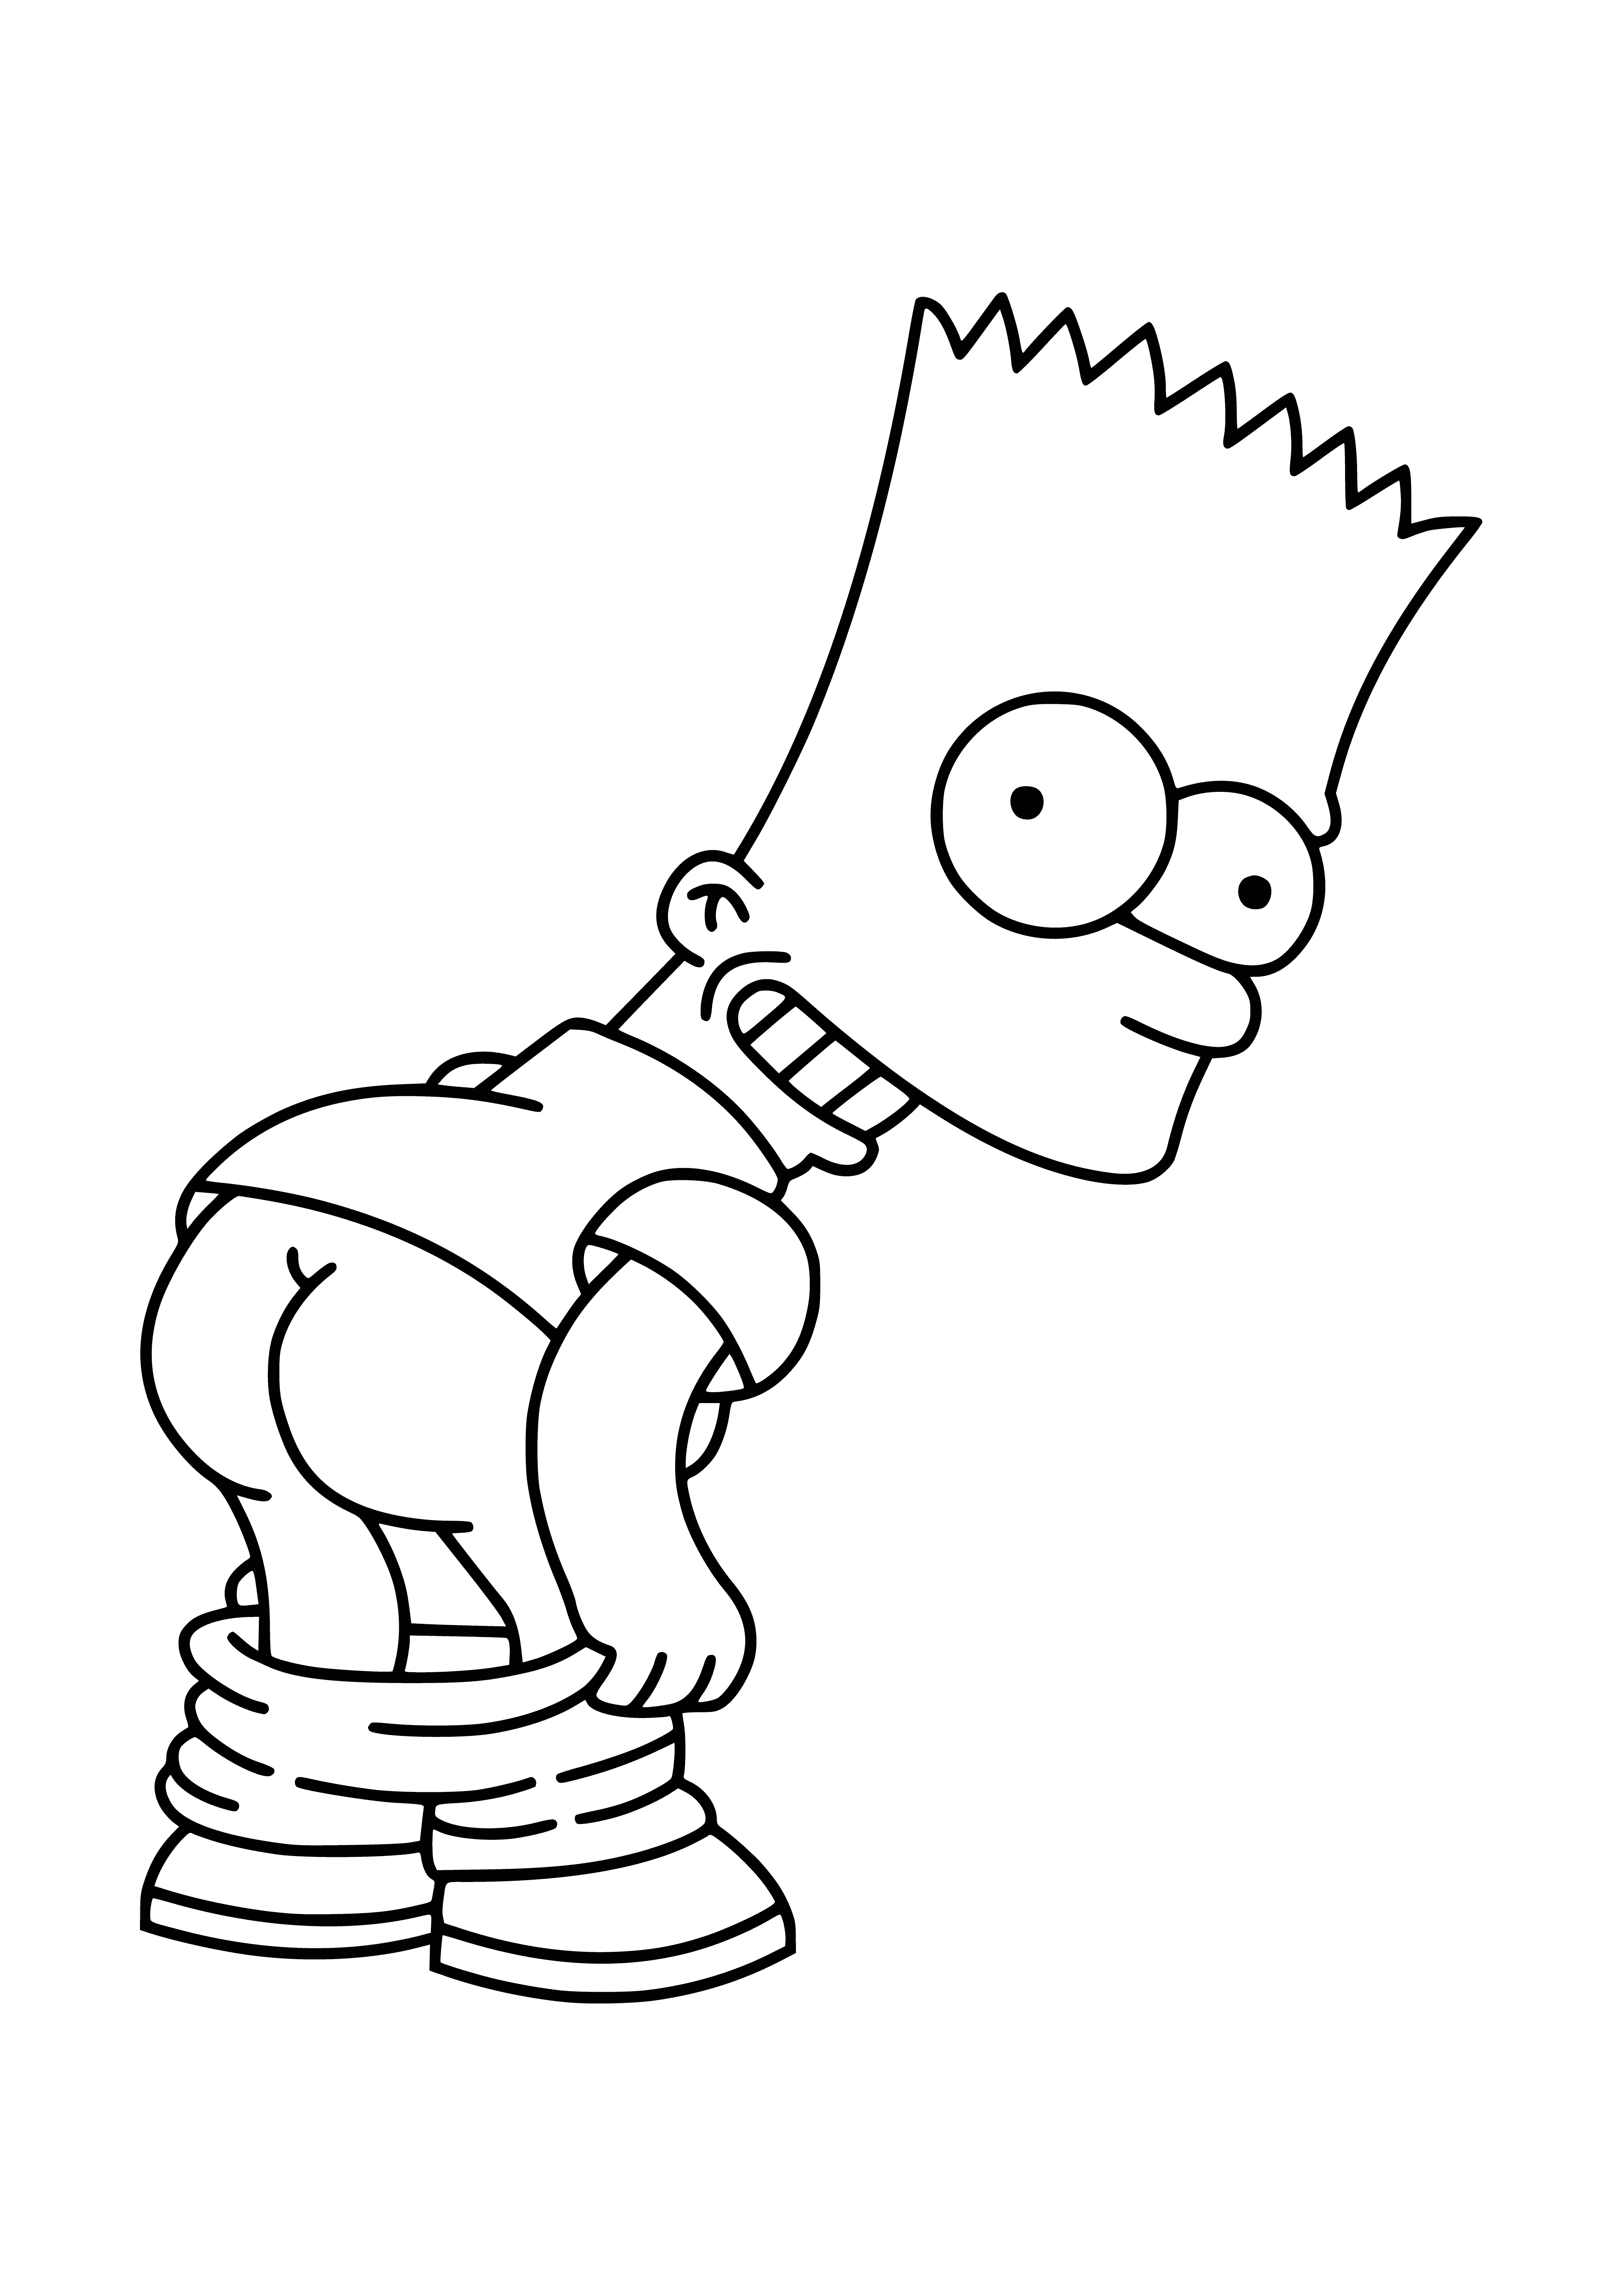 Bart est un voyou coloriage